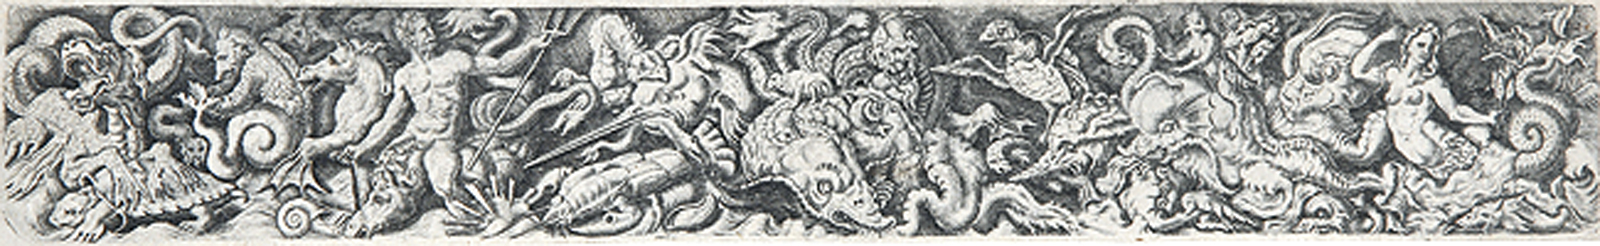 Fries mit Poseidon, Meerjungfrau und groteskem Meeresgetier.